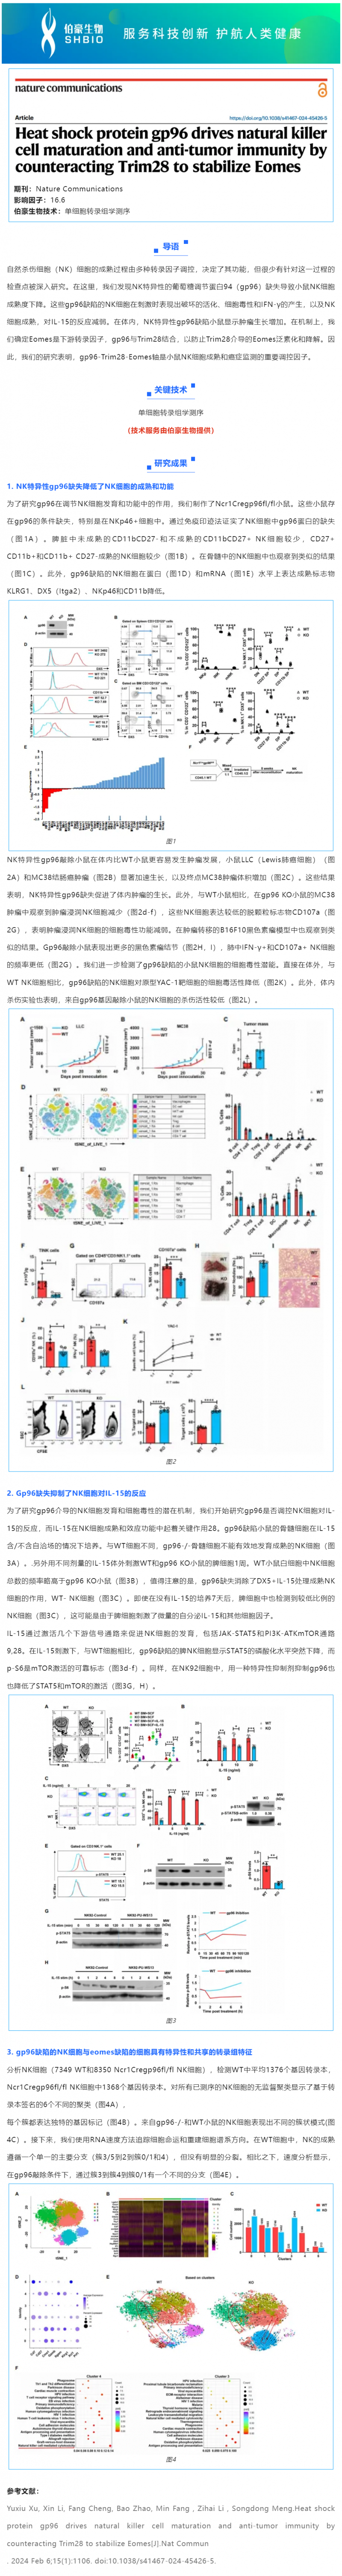 529 项目文章 _ 热休克蛋白 gp96 通过对抗 Trim28 来稳定 Eomes，从而驱动自然杀伤细胞的成熟和抗